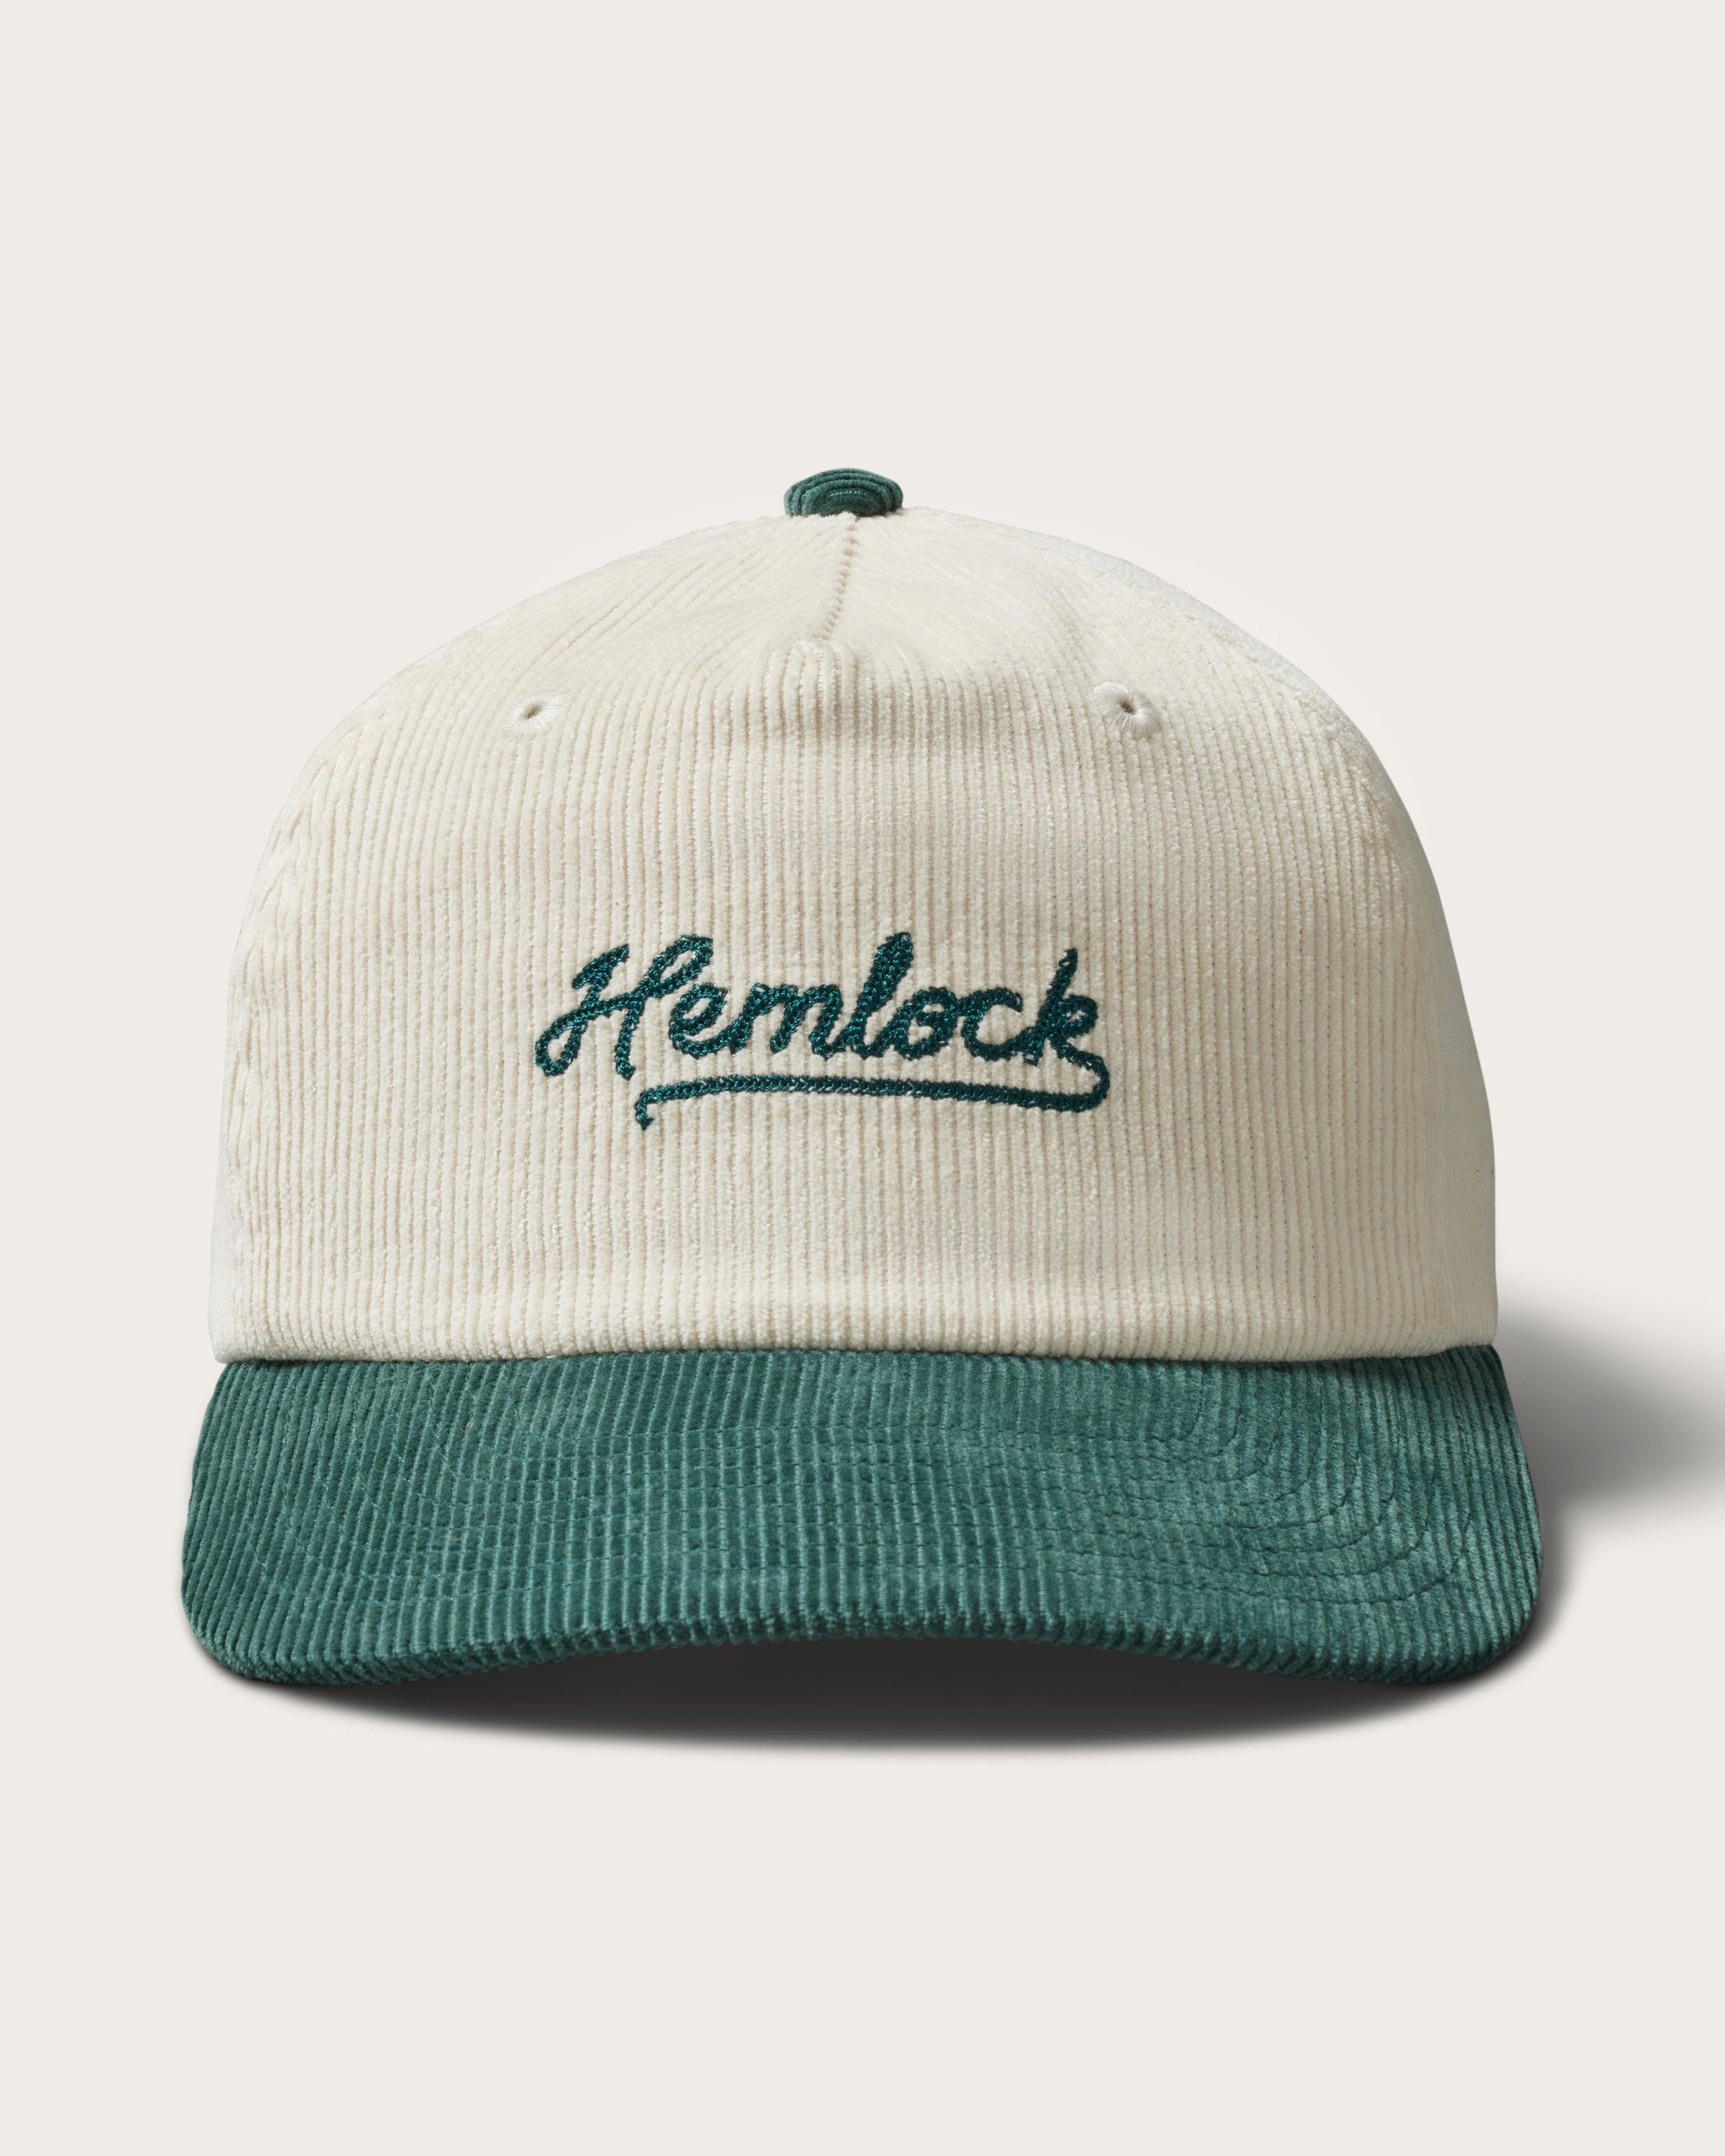 Hemlock Wesley Corduroy Baseball Hat in Emerald detailed view